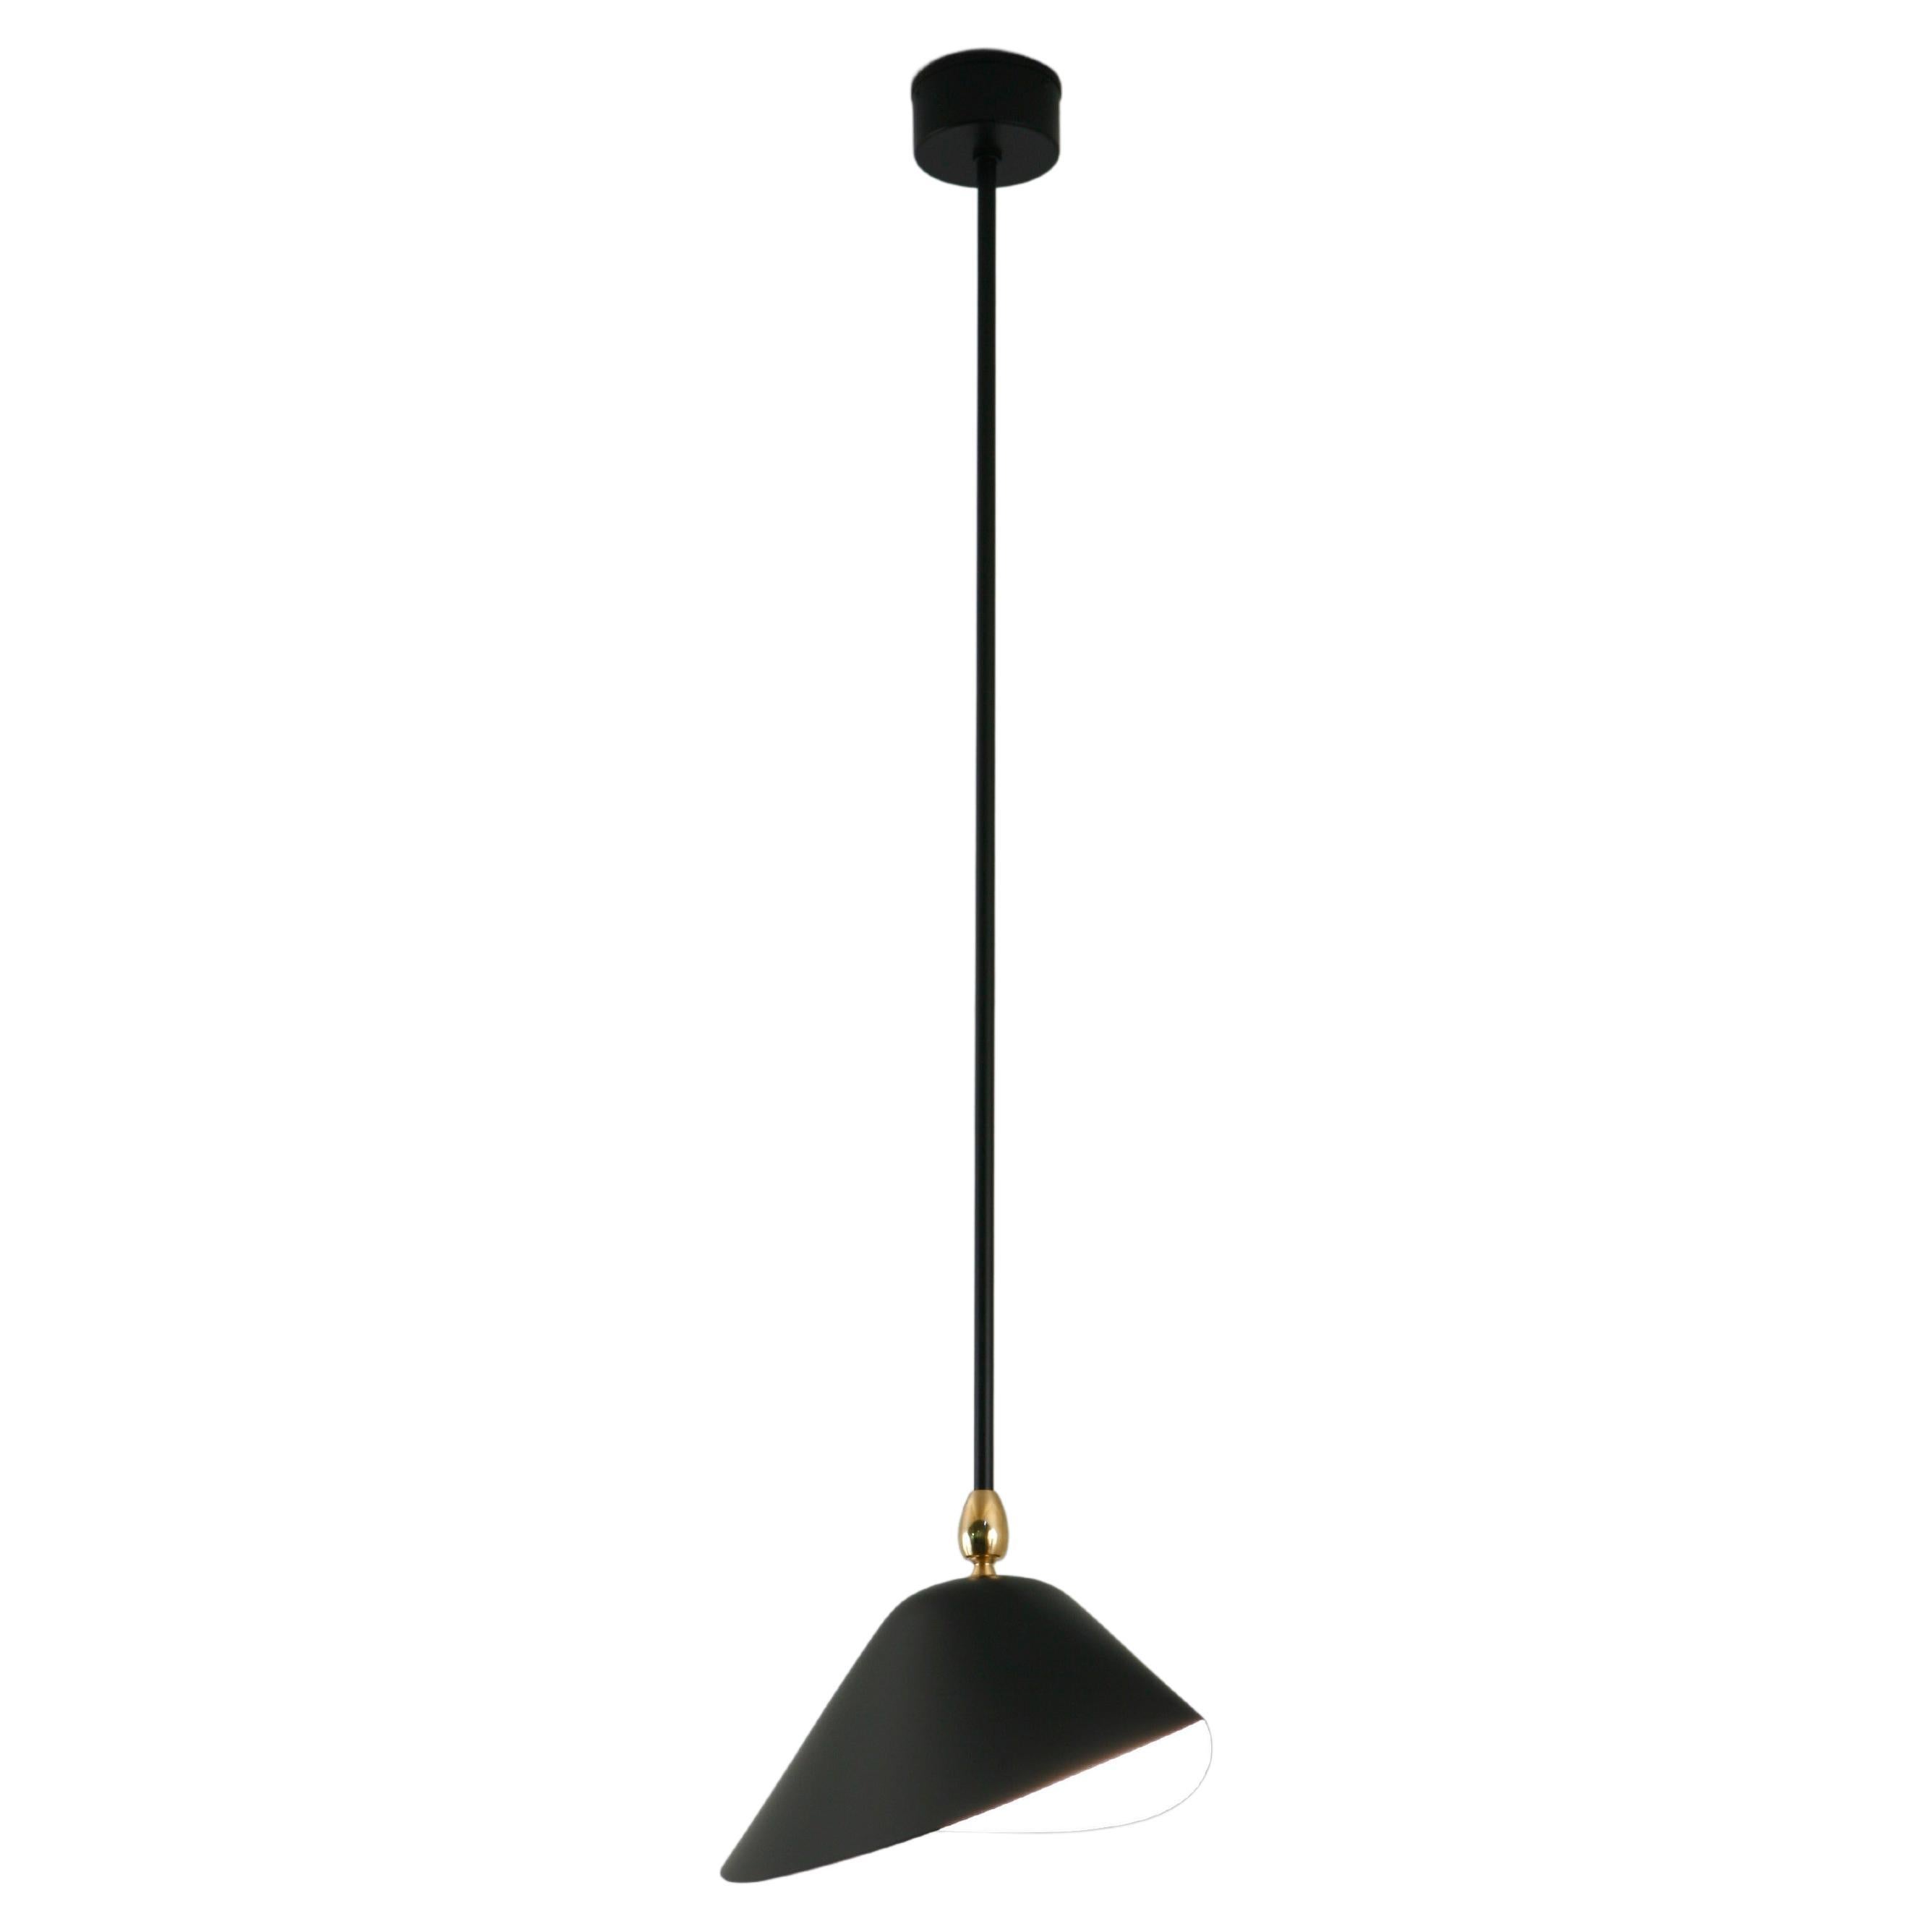 Serge Mouille 'Bibliothèque' Ceiling Lamp in Black